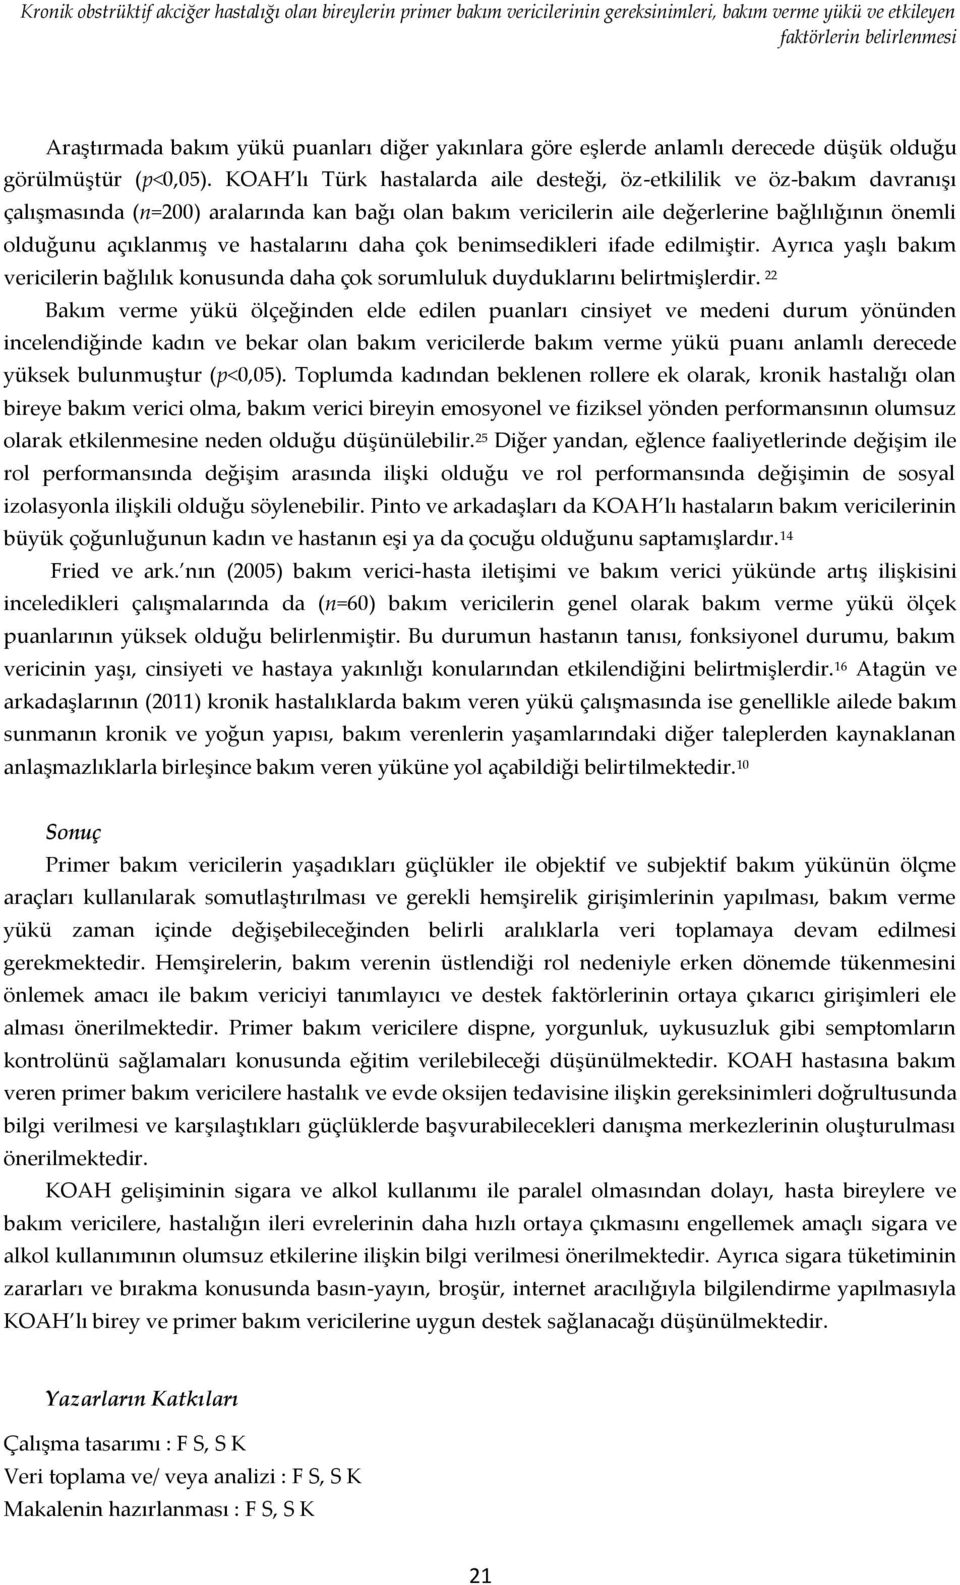 KOAH lı Türk hastalarda aile desteği, öz-etkililik ve öz-bakım davranışı çalışmasında (n=200) aralarında kan bağı olan bakım vericilerin aile değerlerine bağlılığının önemli olduğunu açıklanmış ve